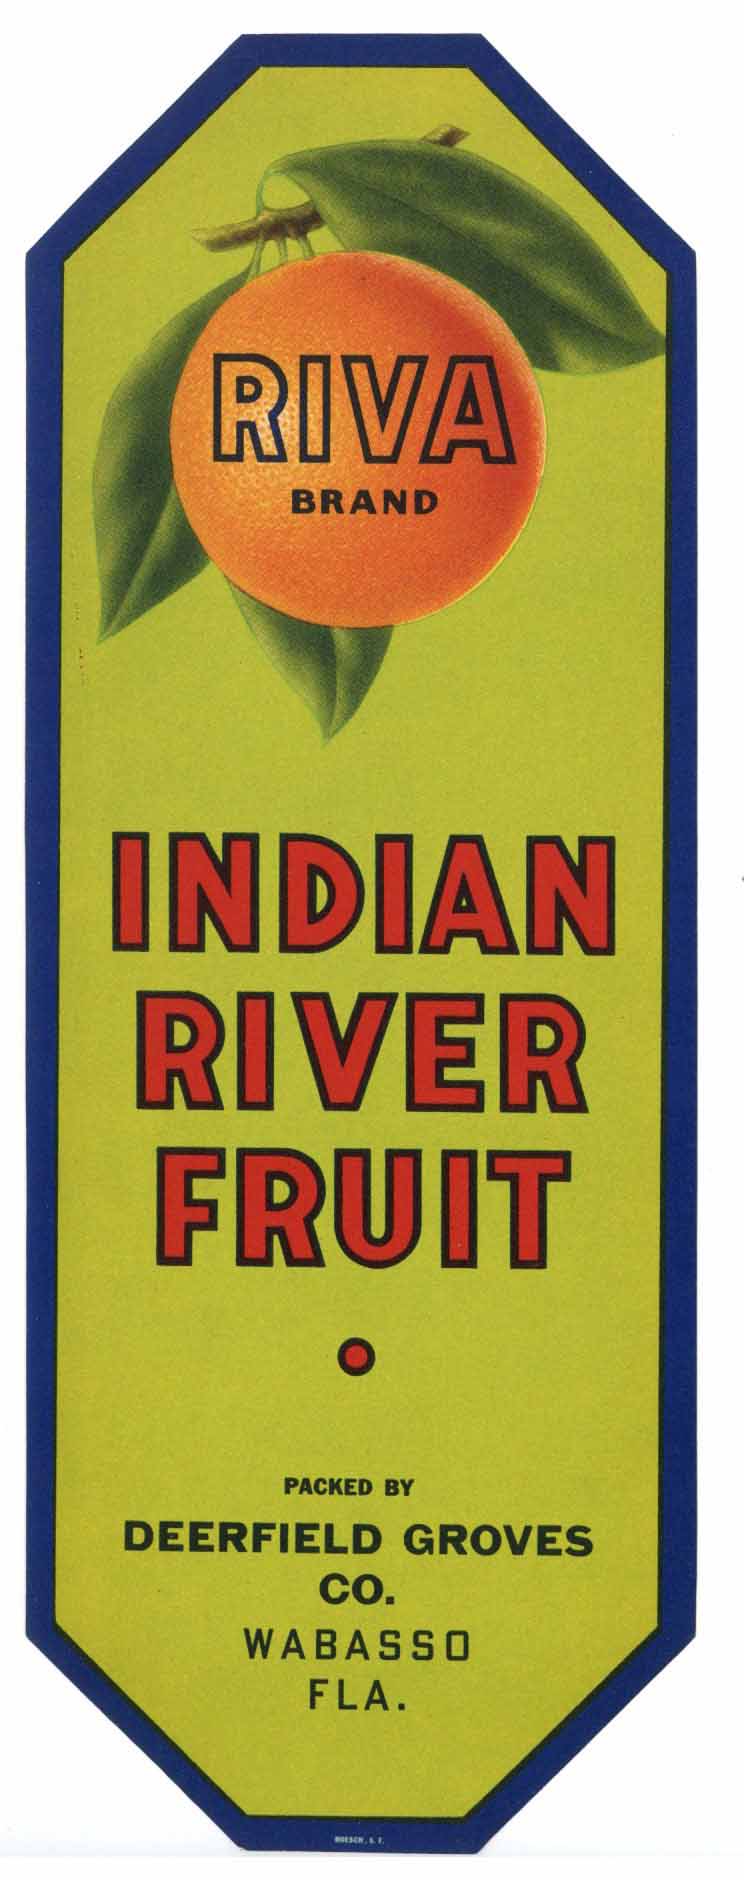 Riva Brand Vintage Wabasso Florida Citrus Crate Label